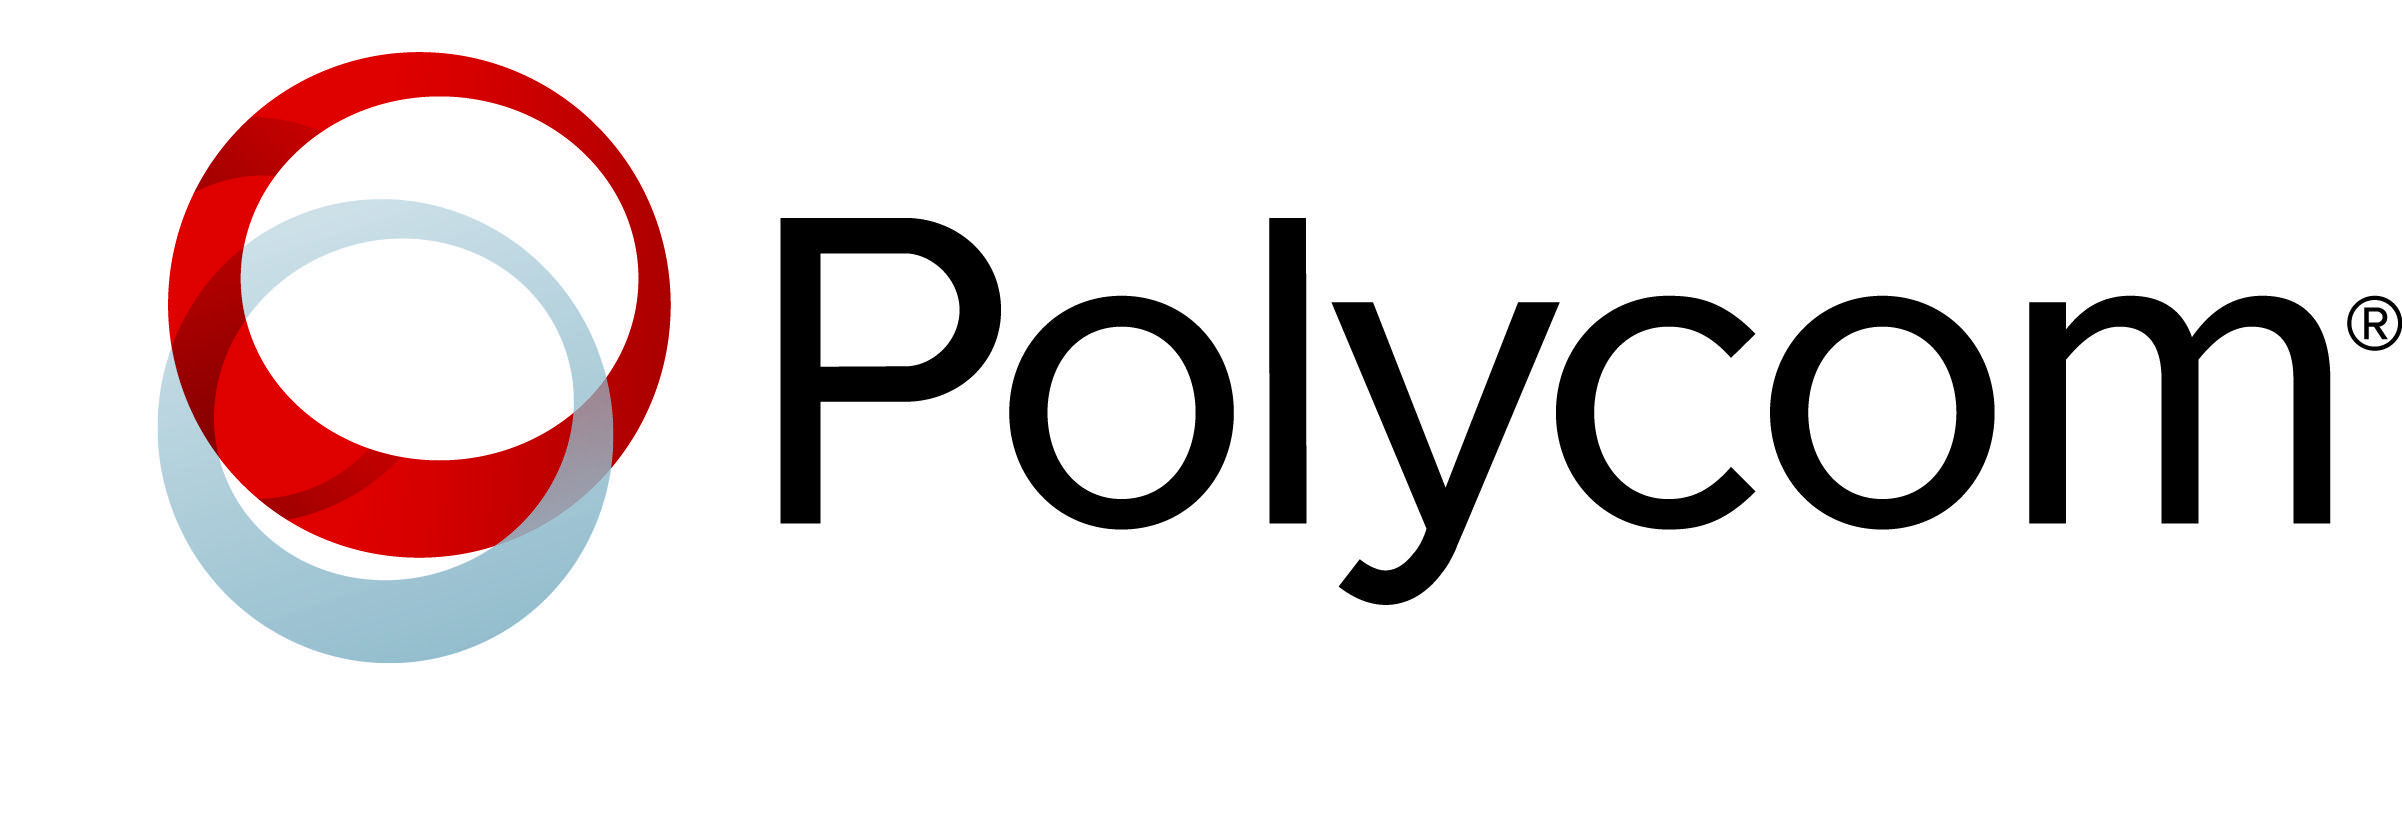 Polycom Logo - Polycom Logo Commercial AV